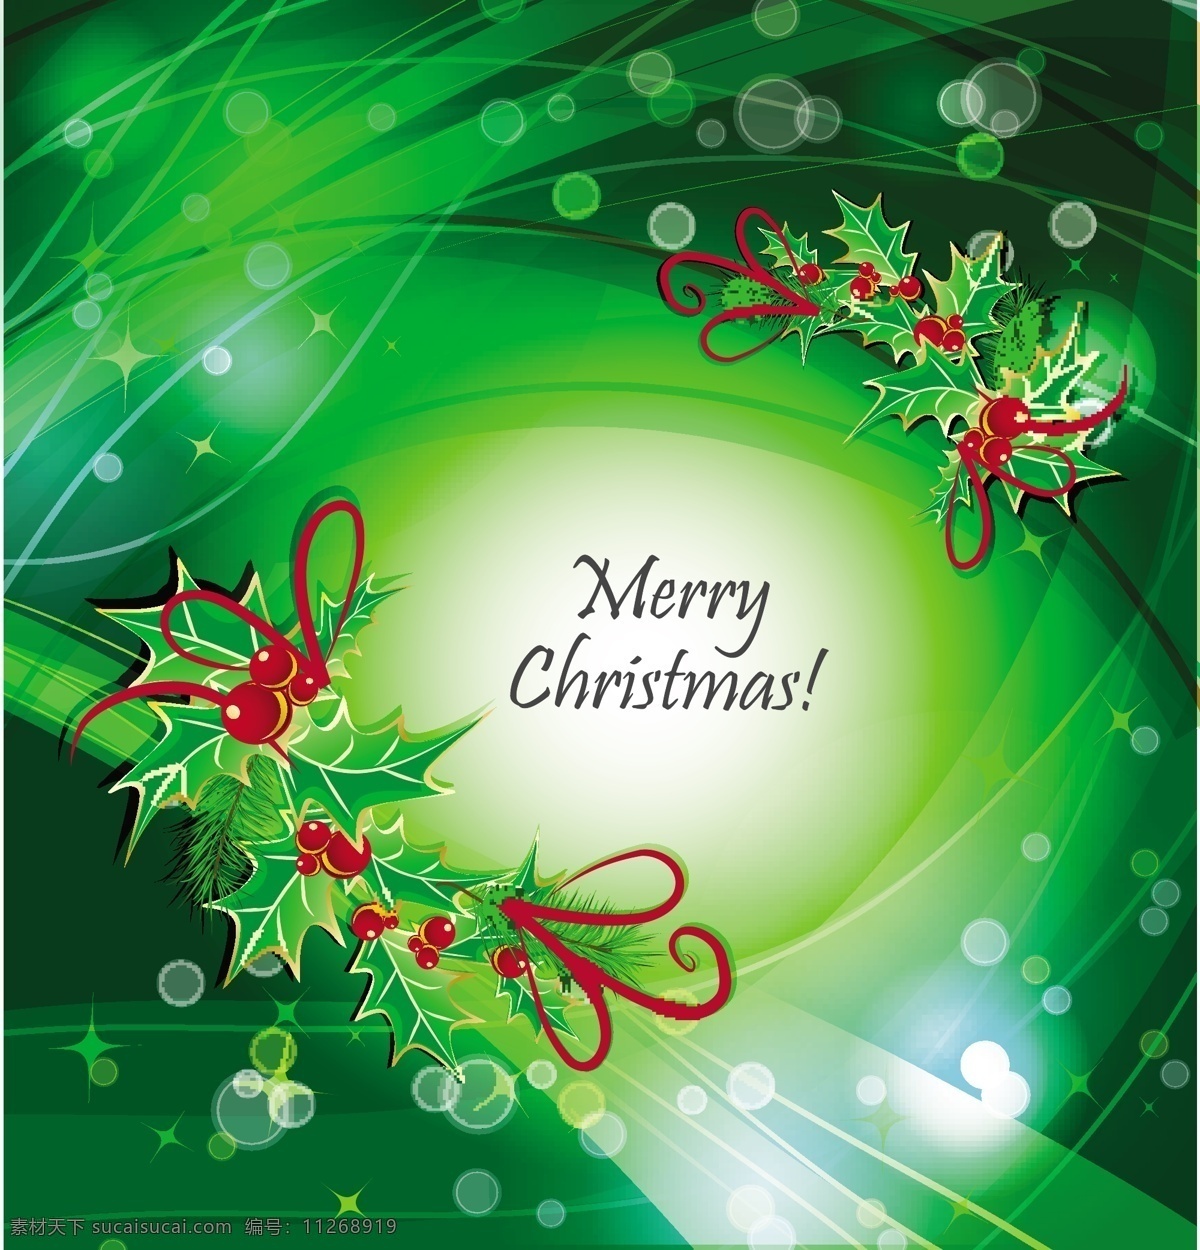 槲寄生 架 绿色 曲线 圣诞 背景 背景壁纸 庆典和聚会 圣诞节 设计元素 花卉和漩涡 节假日 季节性 装饰装潢 模板和模型